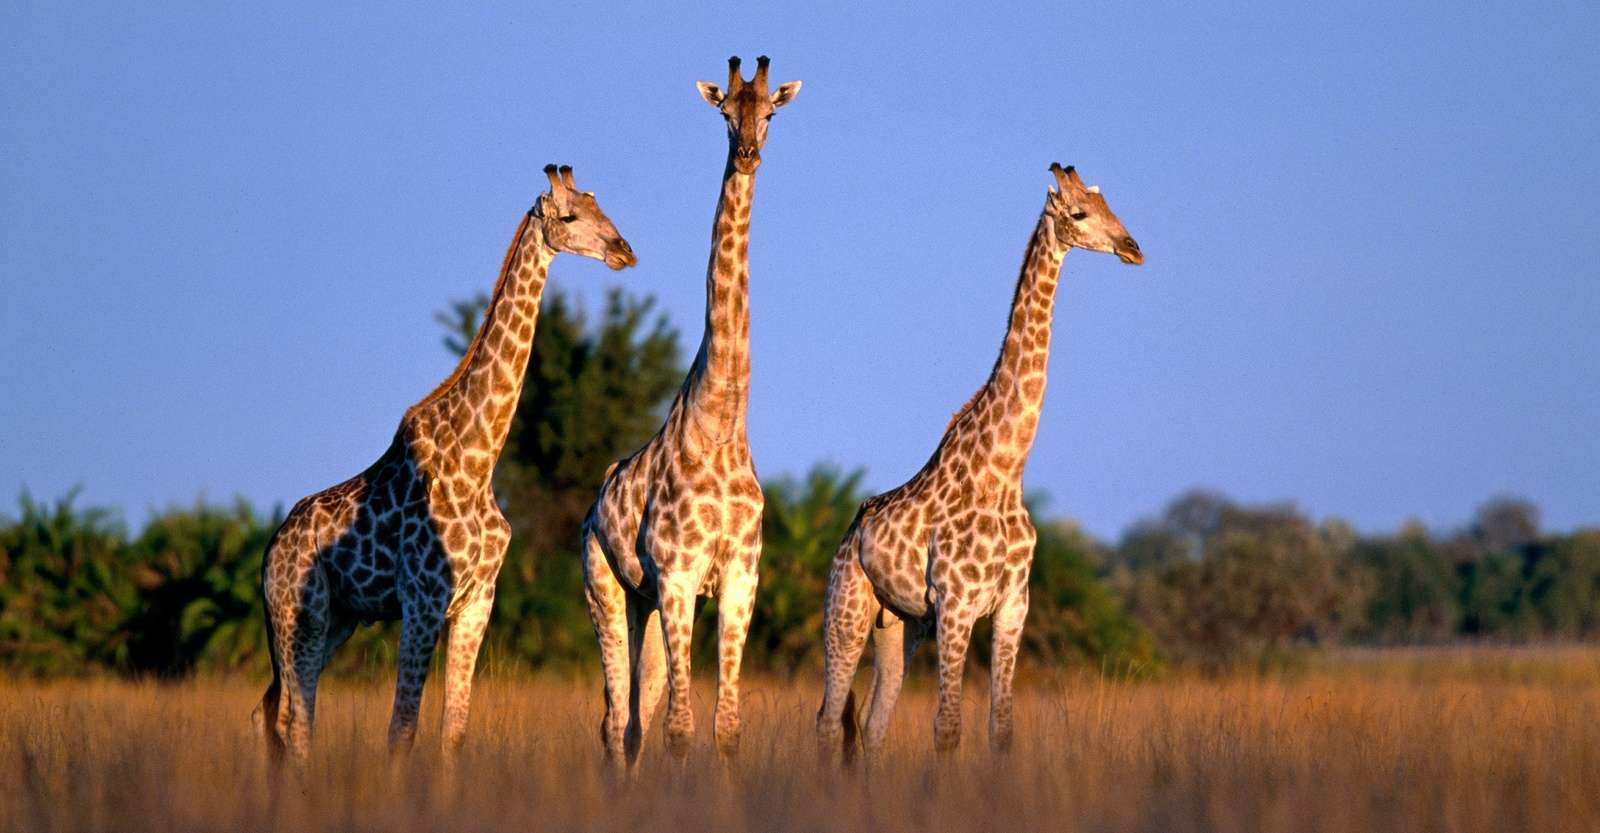 Giraffes, Okavango Delta, Botswana.